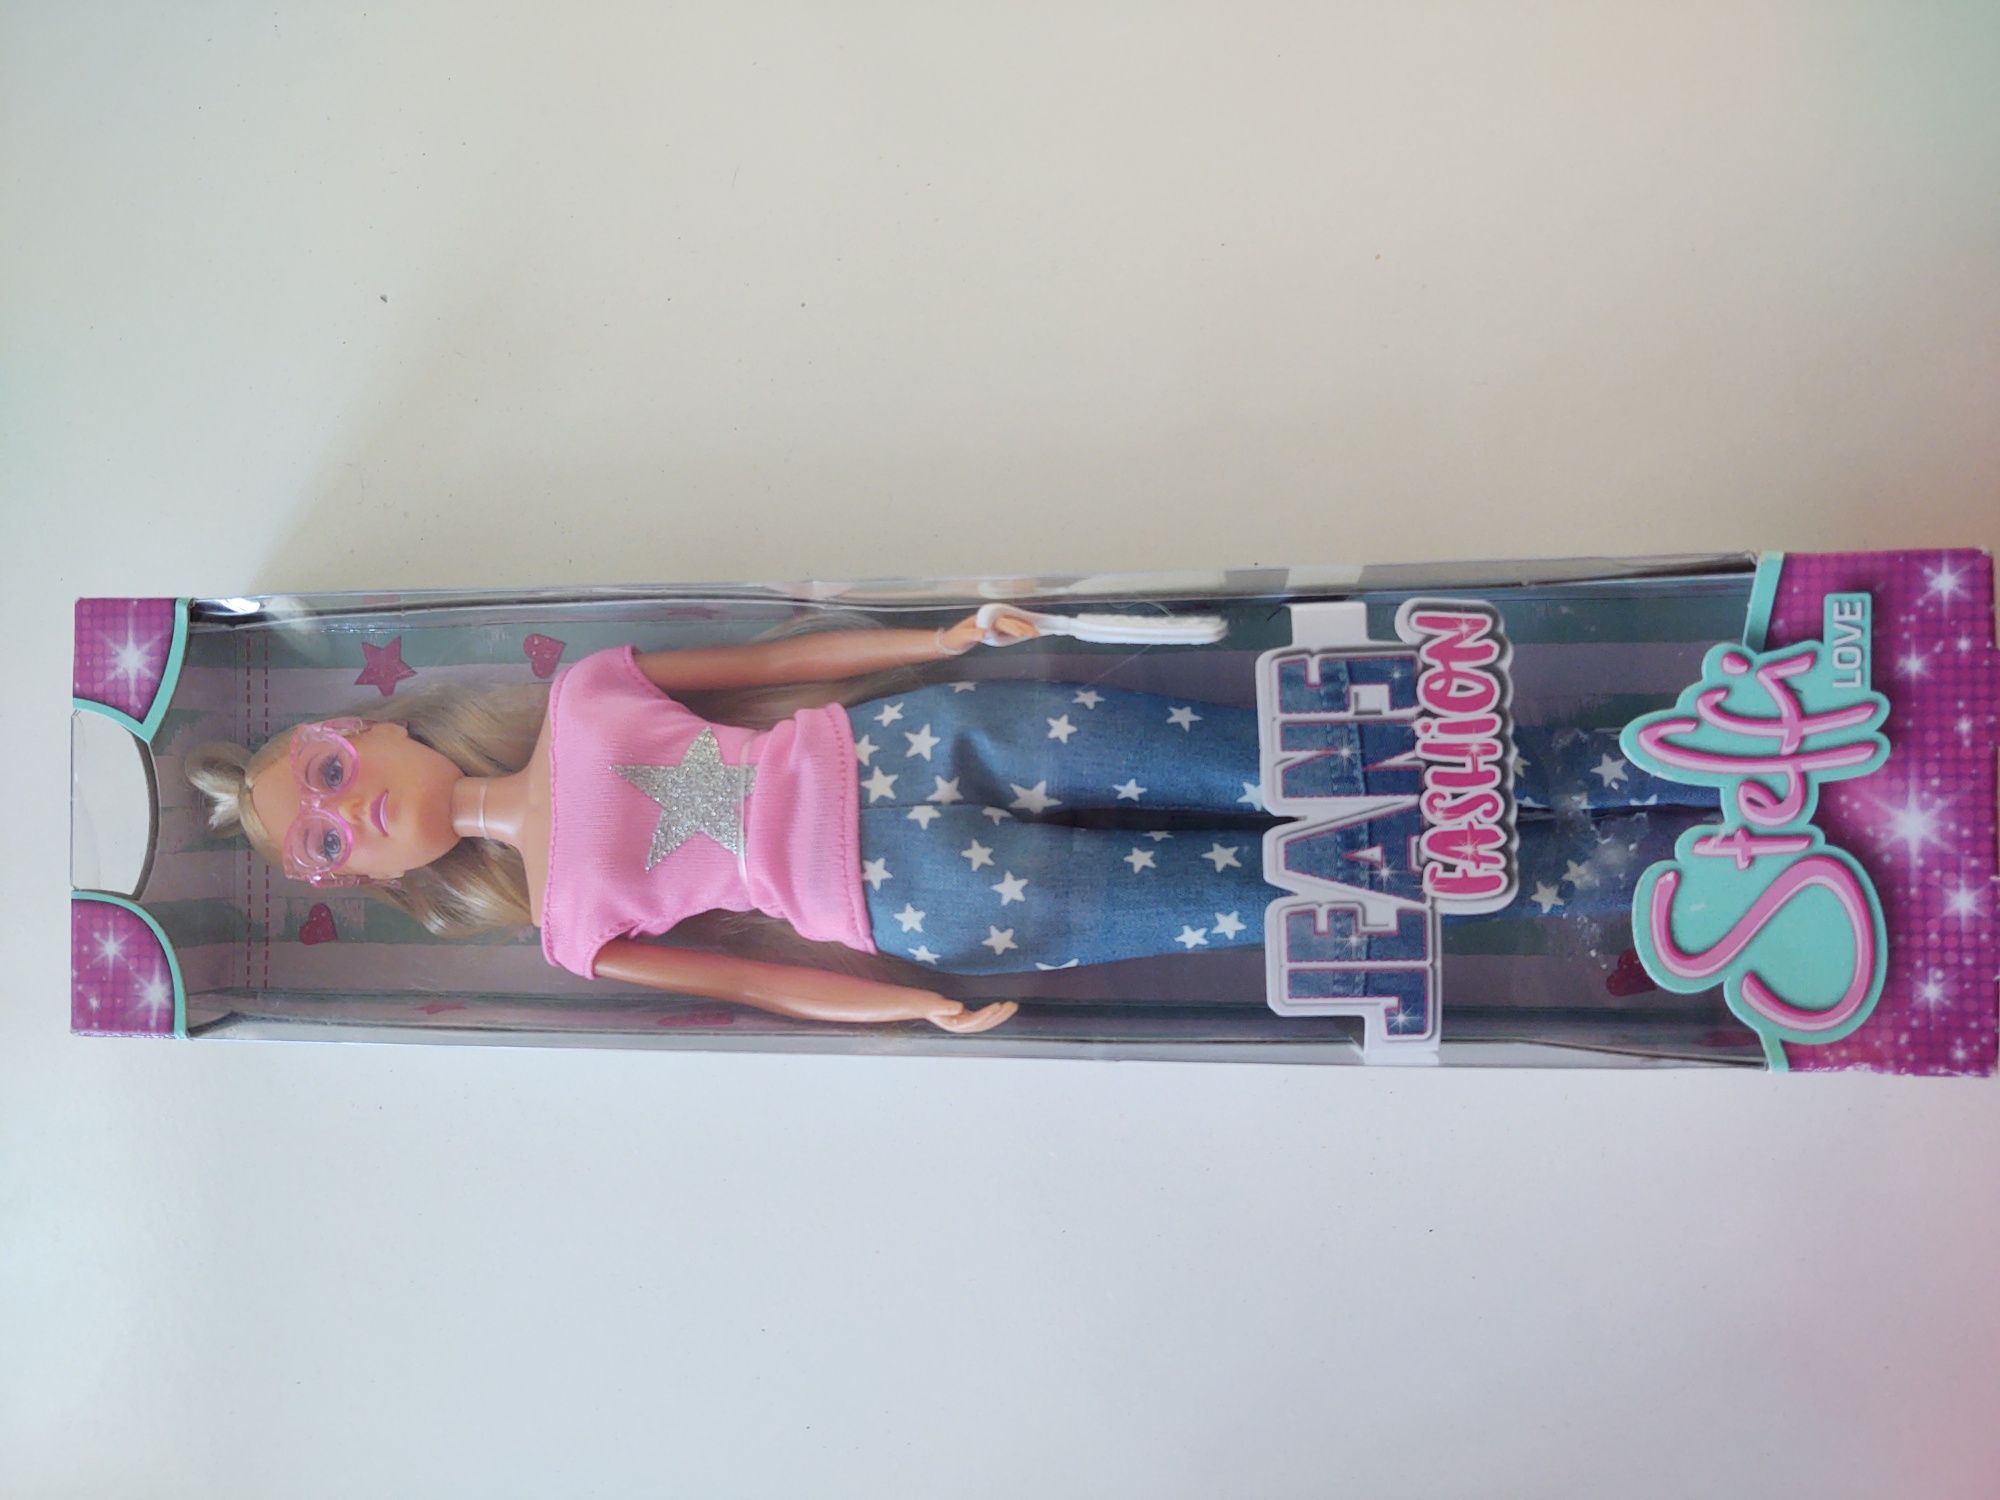 Nowa Lalka barbie Steffi love Simba moda Jeans różowa okulary prezent